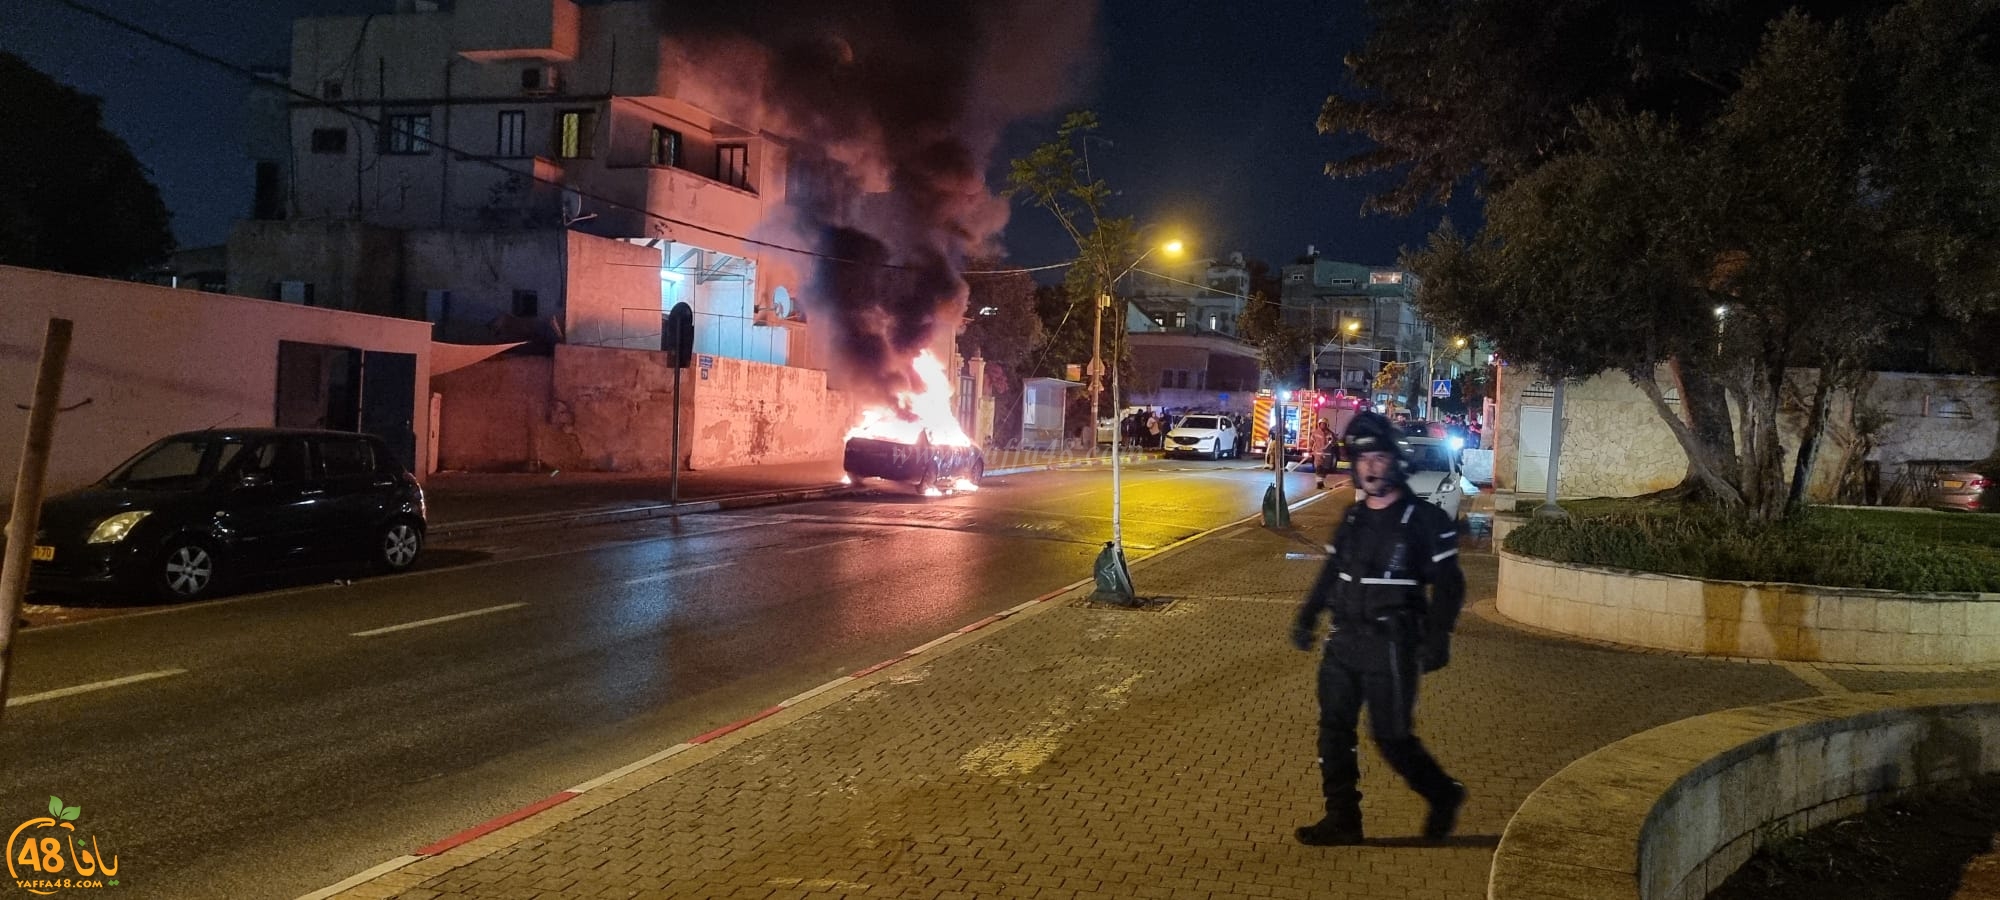 يافا : الشرطة تحقق في حريق سيارة دون وقوع إصابات